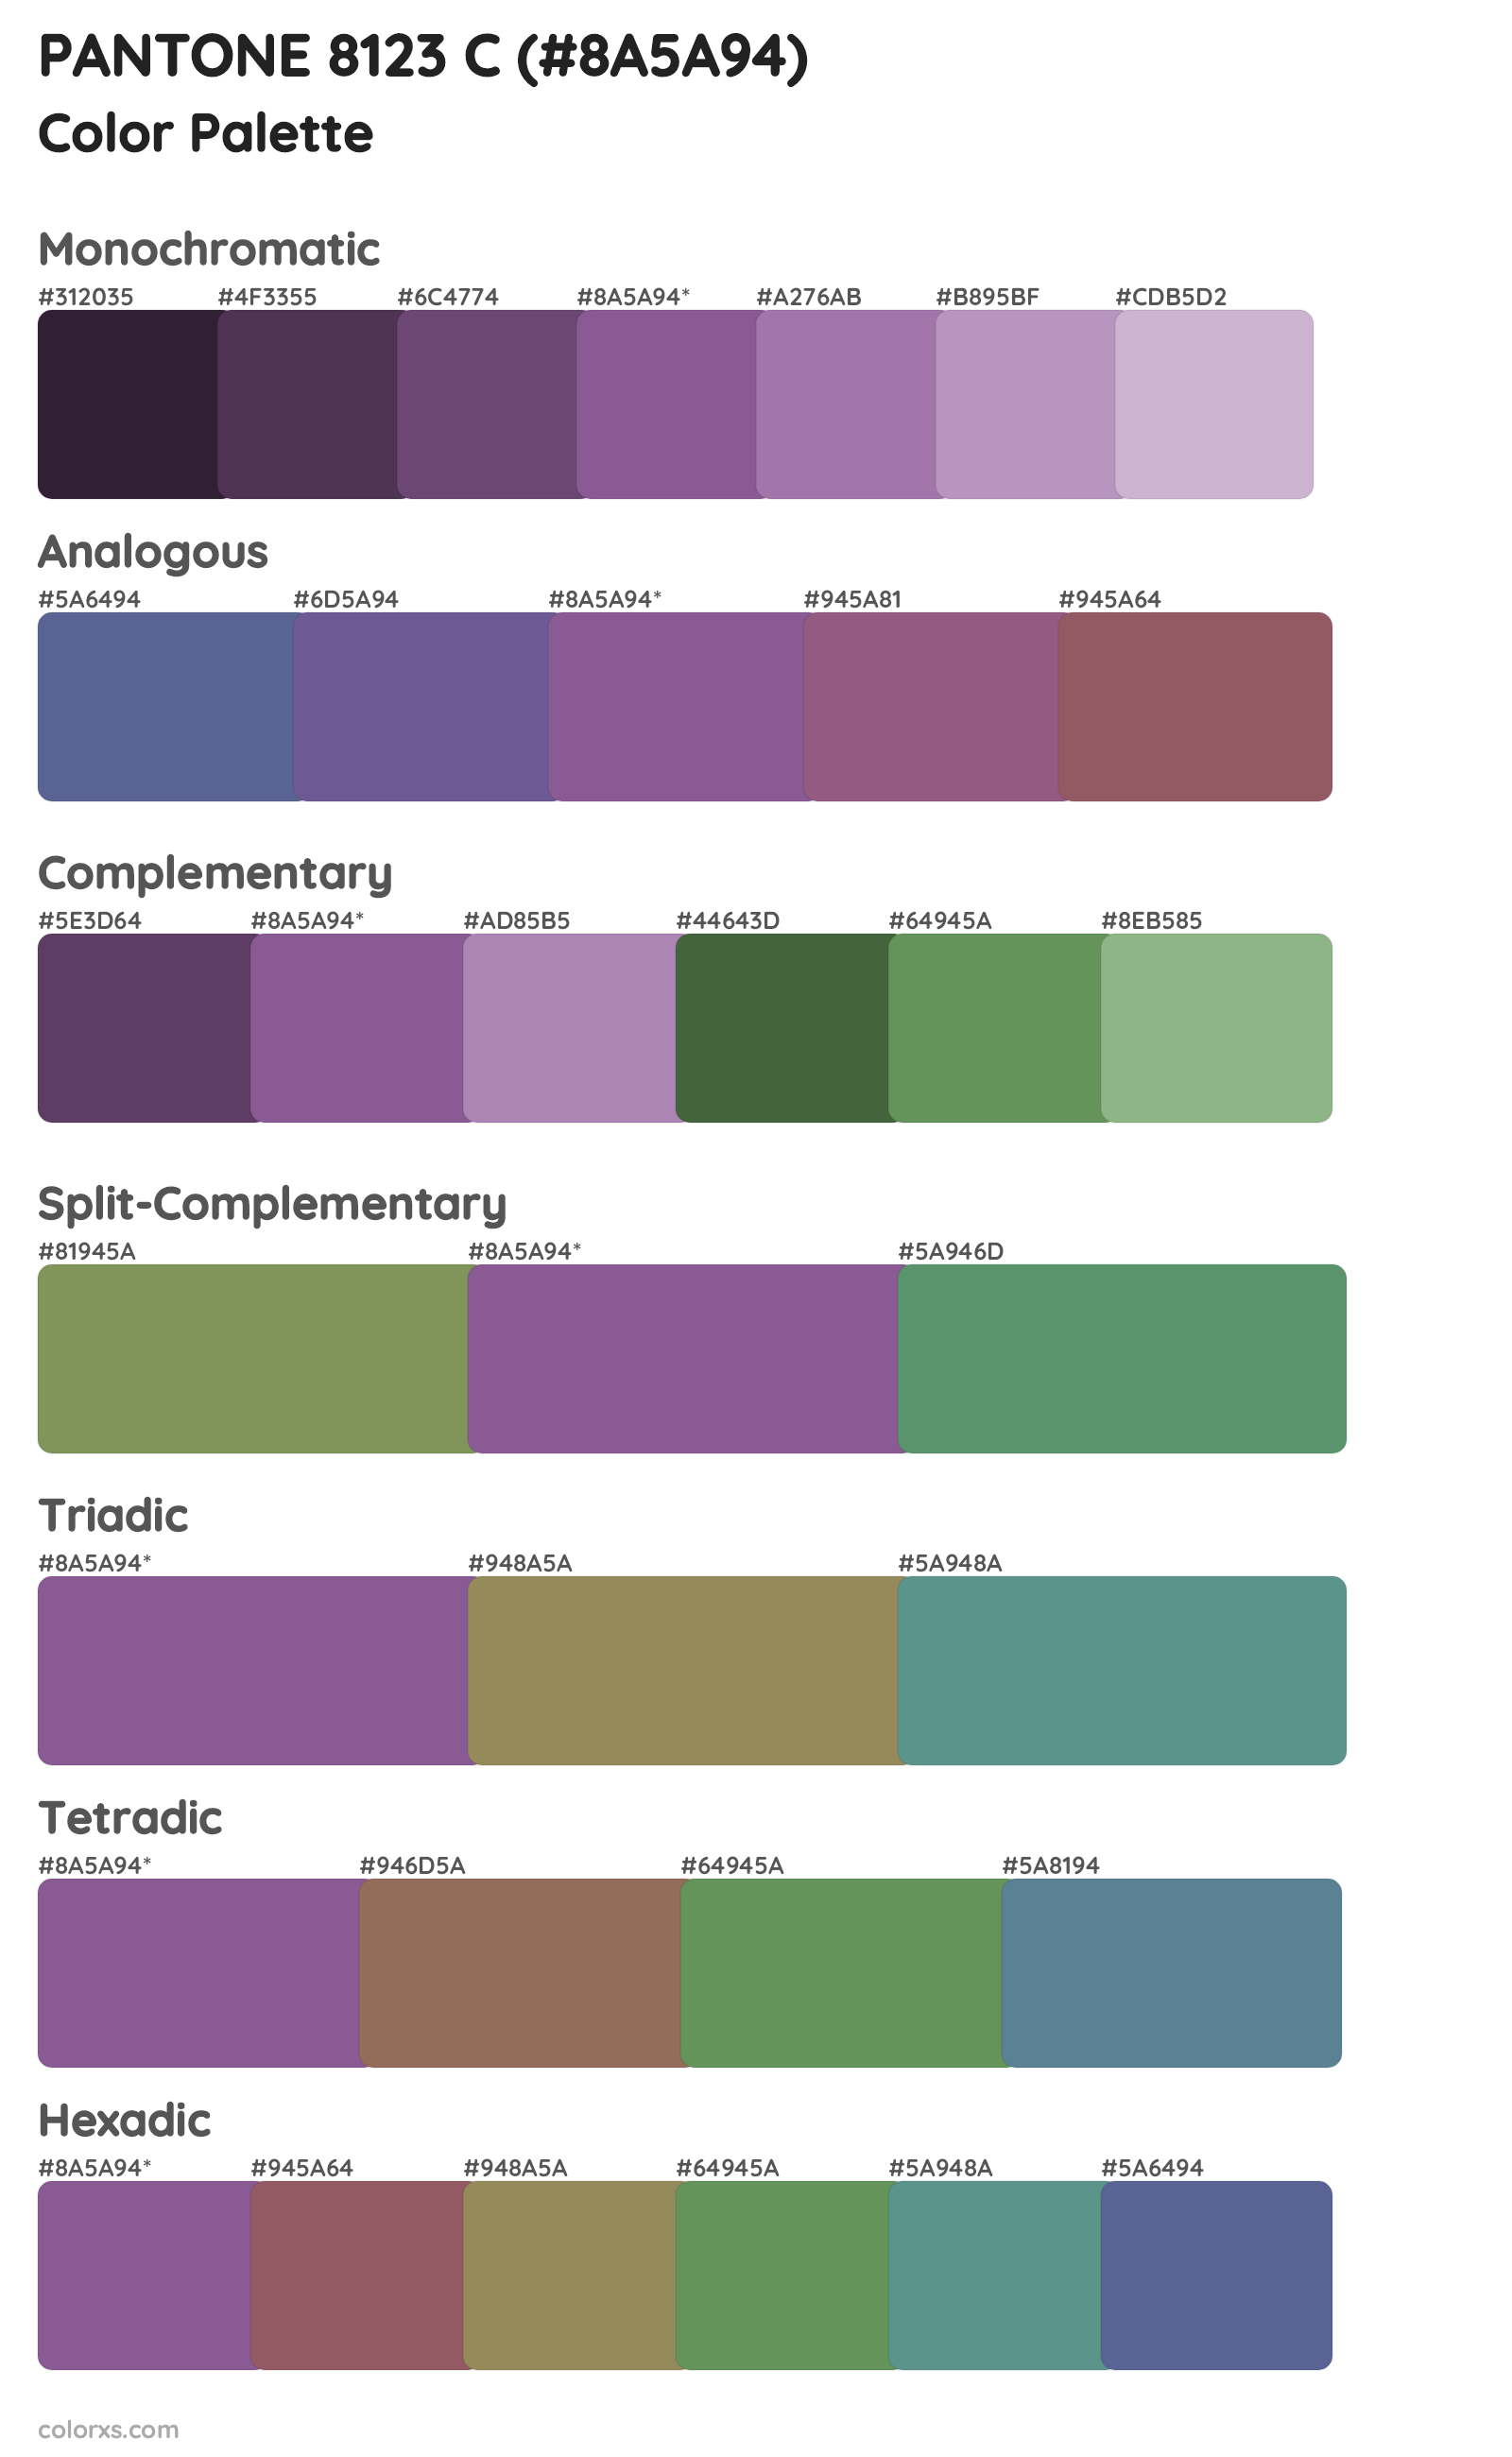 PANTONE 8123 C Color Scheme Palettes